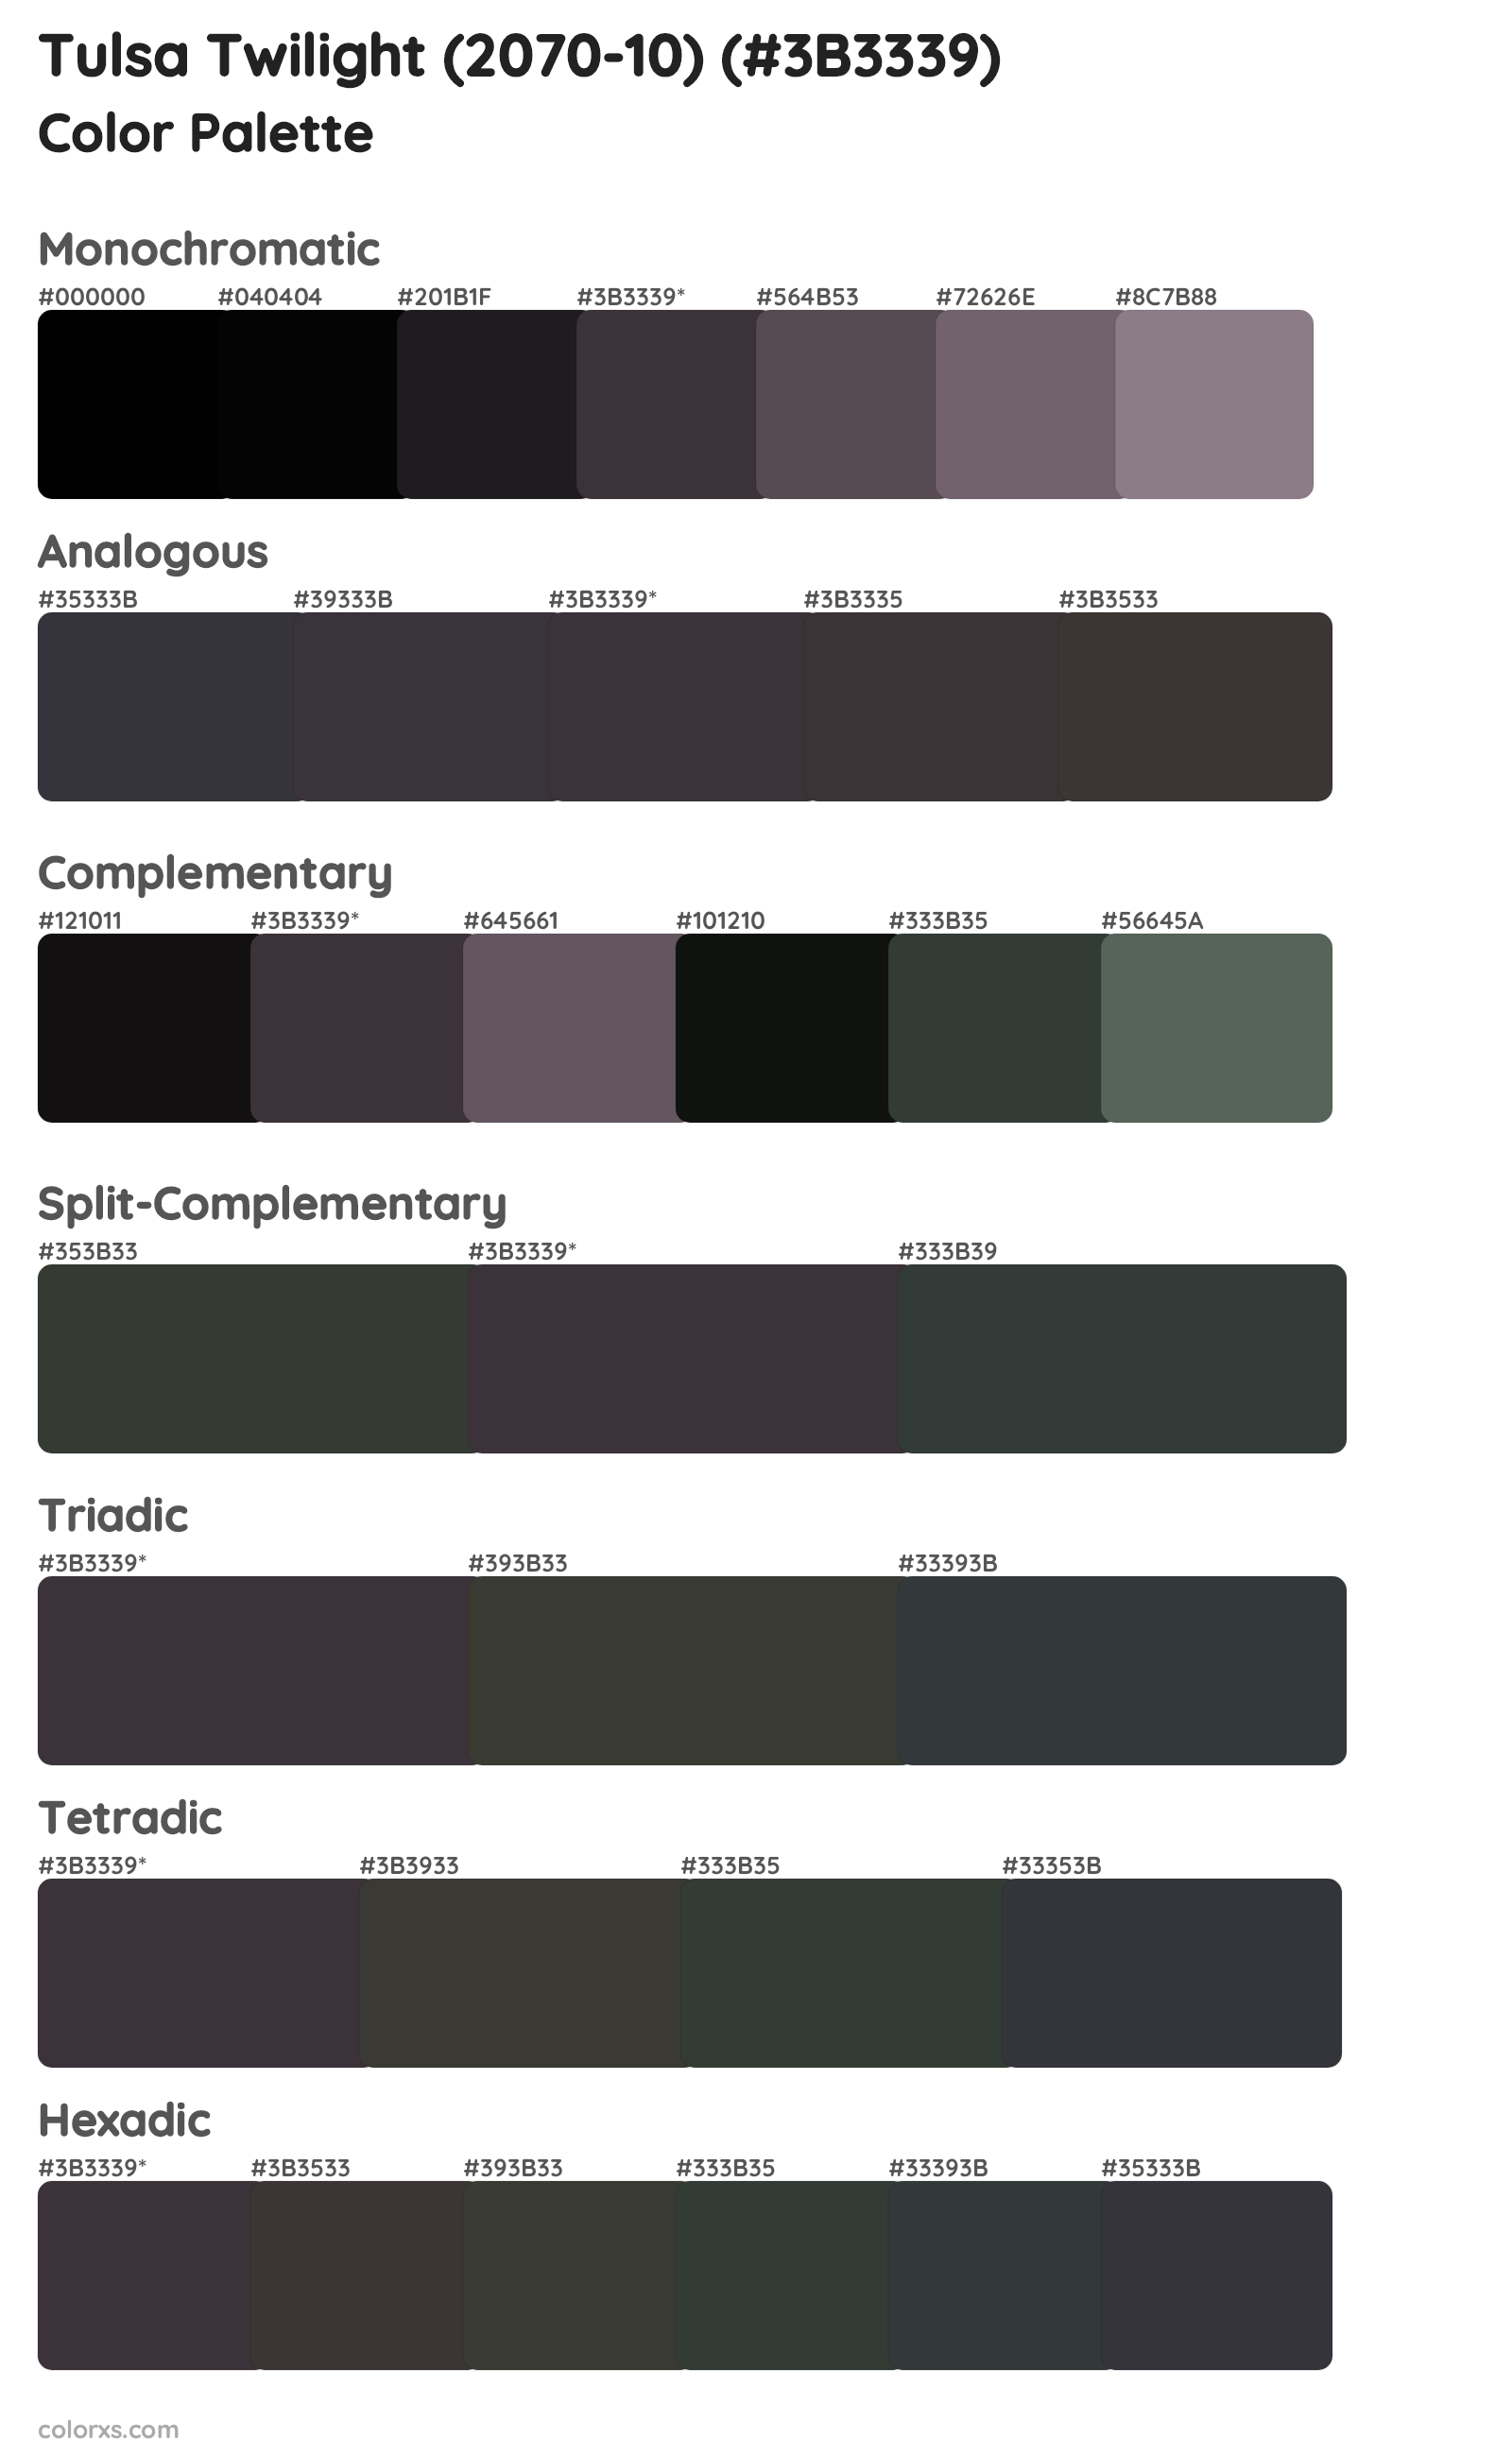 Tulsa Twilight (2070-10) Color Scheme Palettes